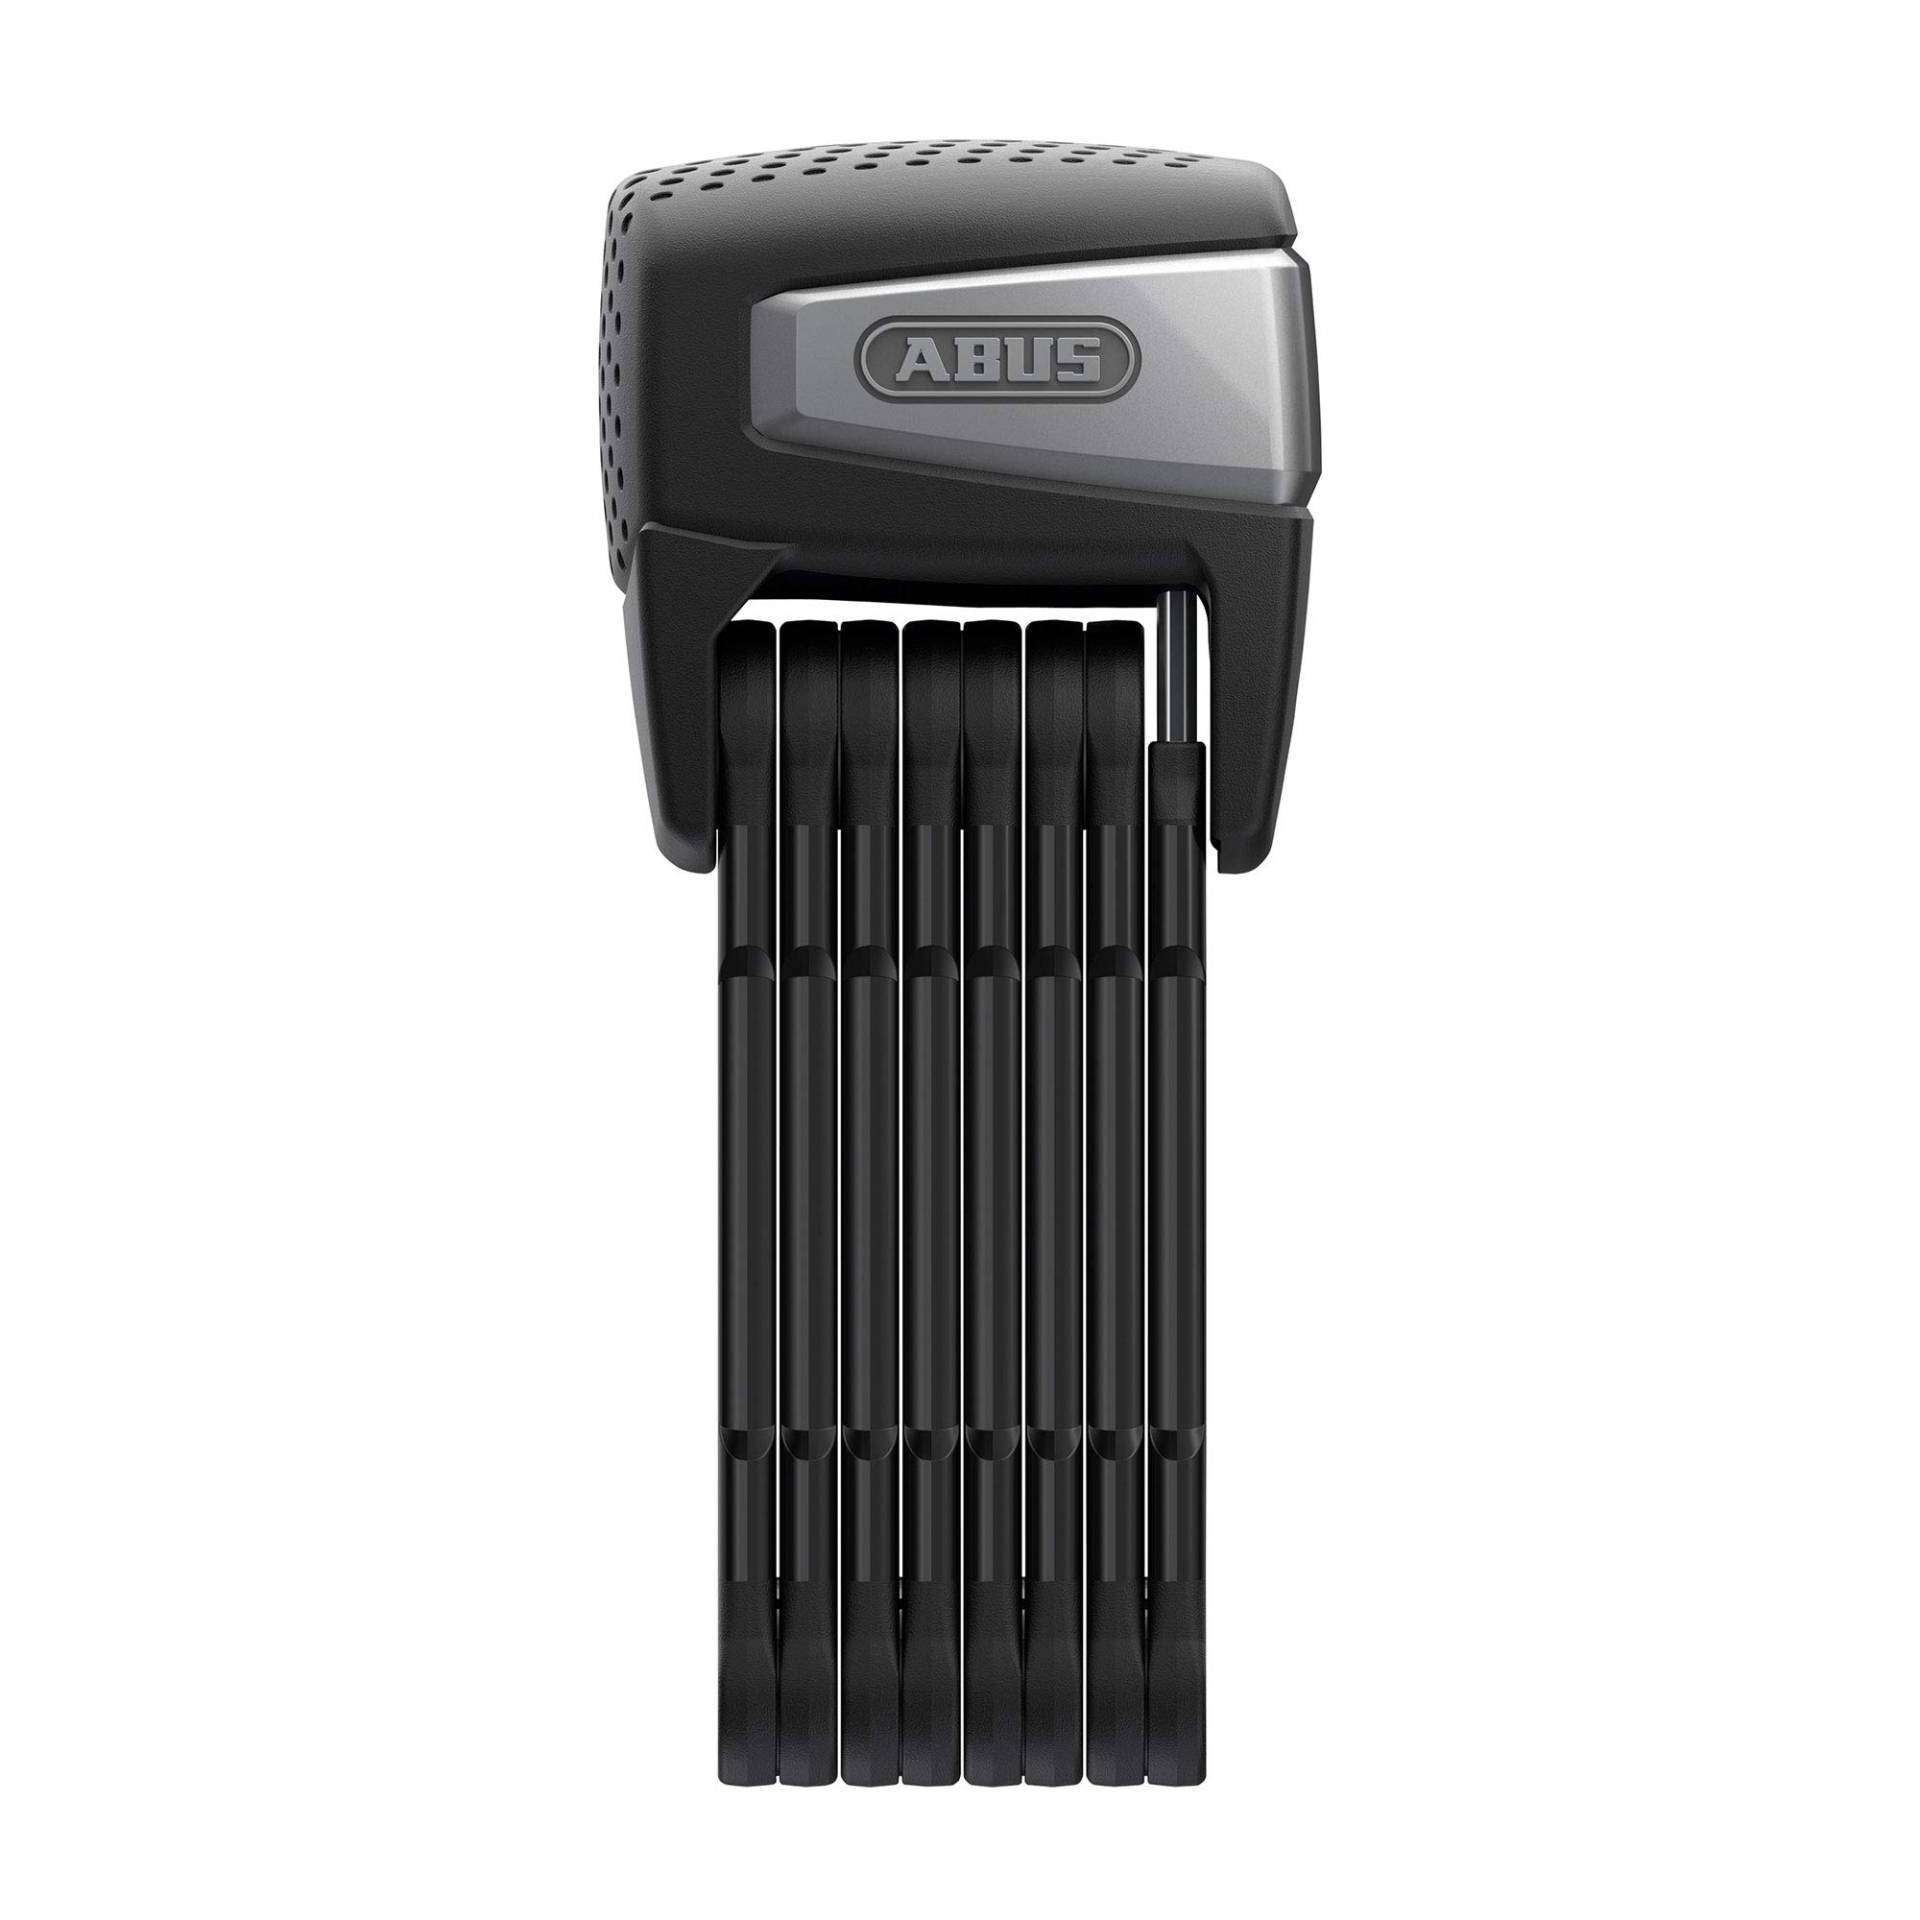 ABUS Faltschloss BORDO One™ 6500A - Smartes Fahrradschloss mit Alarm - schlüsselloses Öffnen per Smartphone und Smartwatch - inkl. Fernbedienung und Halter - ABUS-Sicherheitslevel 15 von ABUS